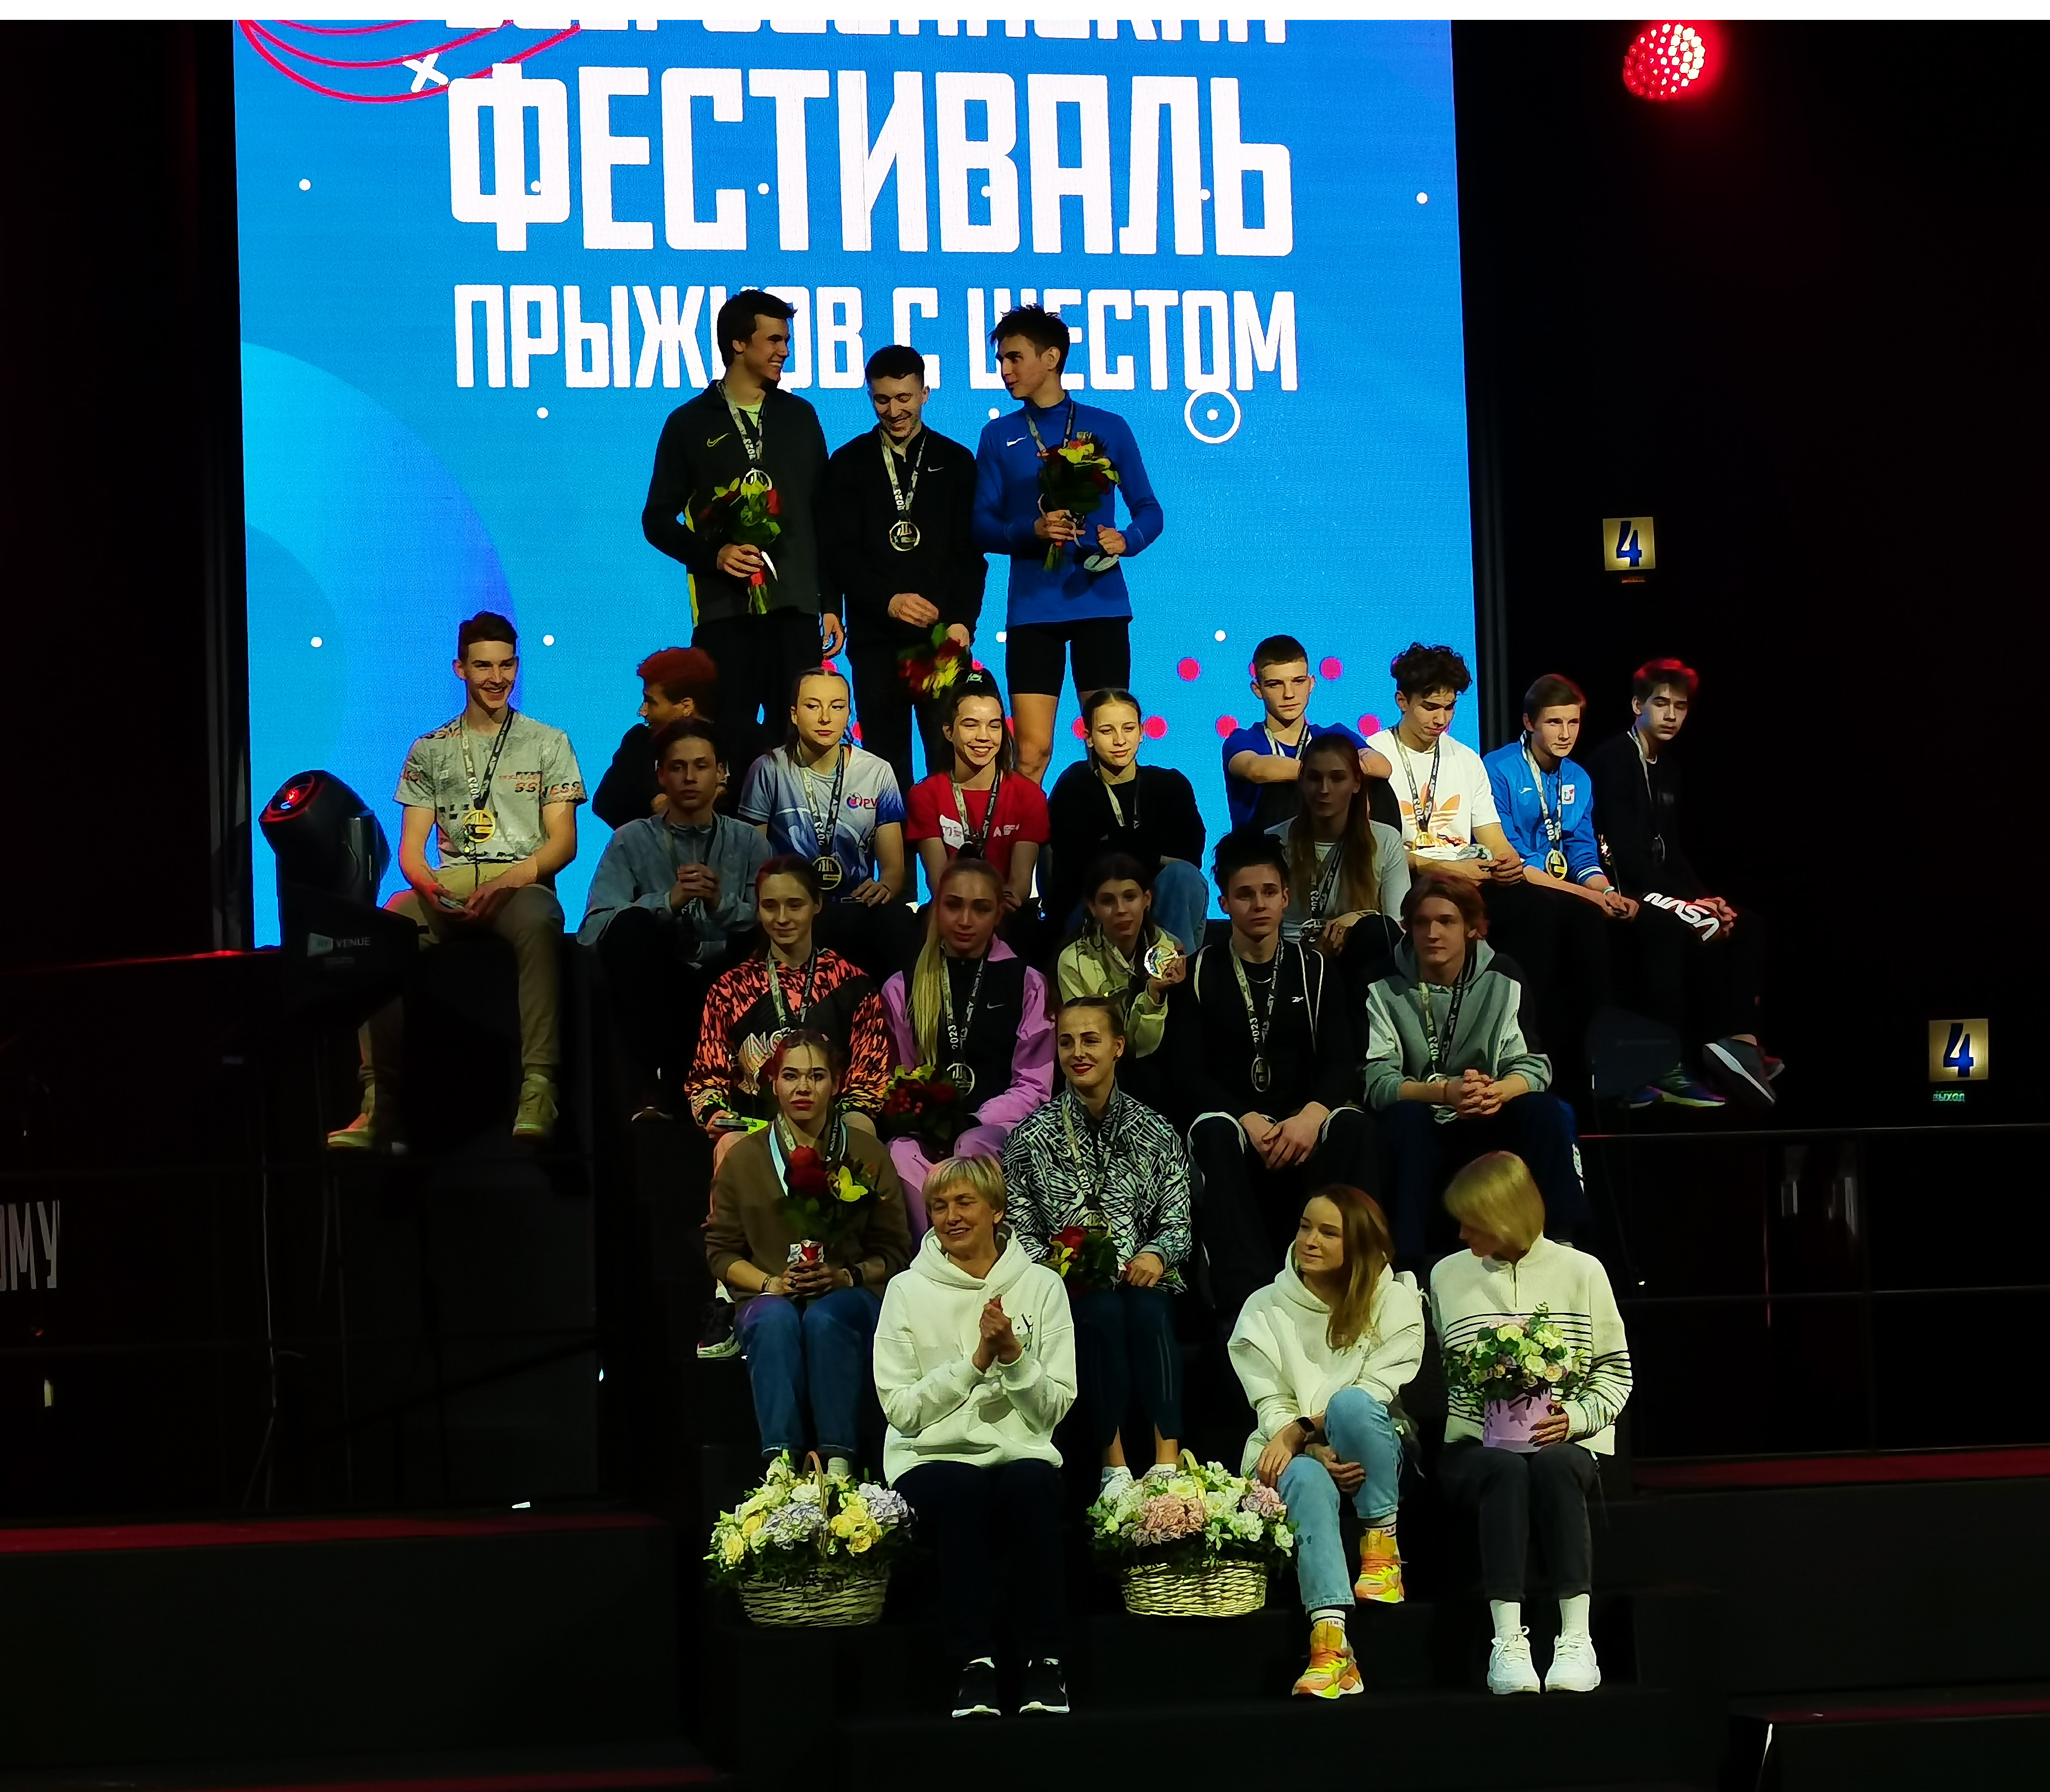 Всероссийский фестиваль по прыжку с шестом